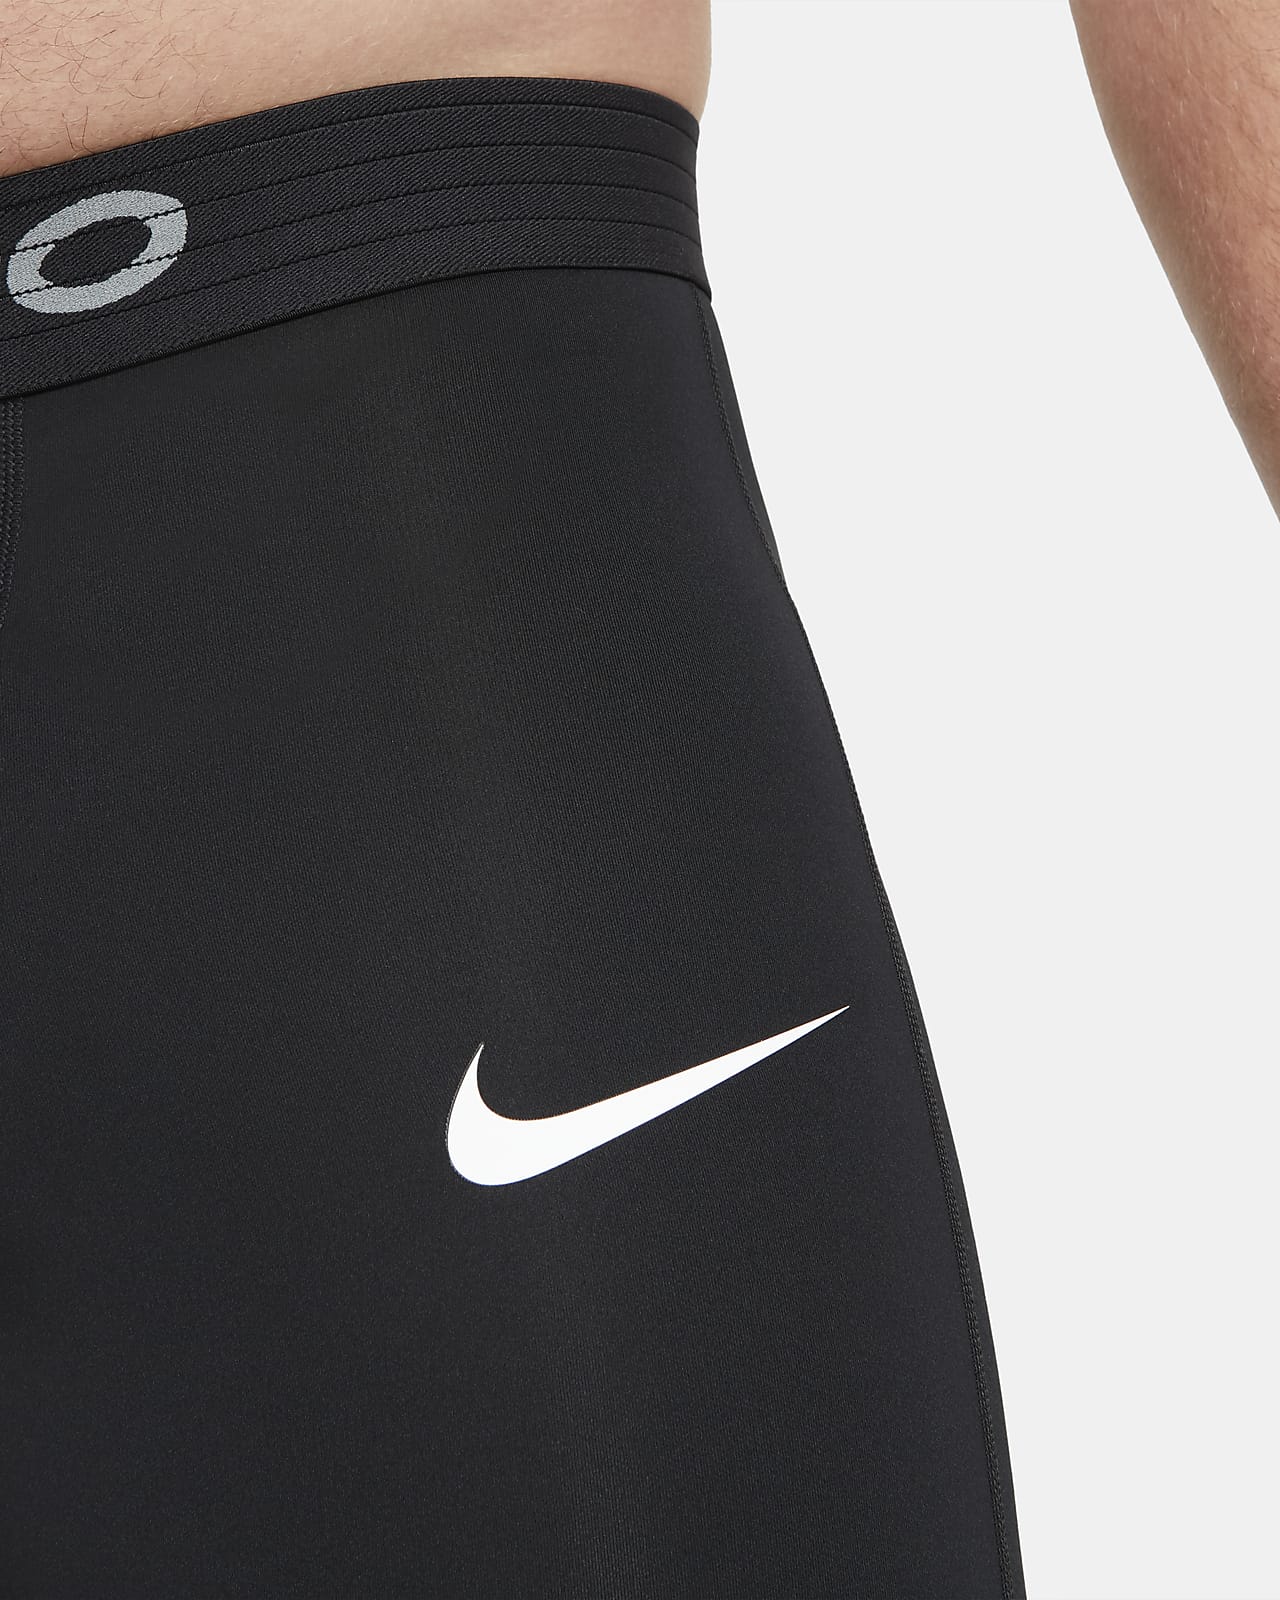 Nike公式 ナイキ プロ メンズタイツ オンラインストア 通販サイト